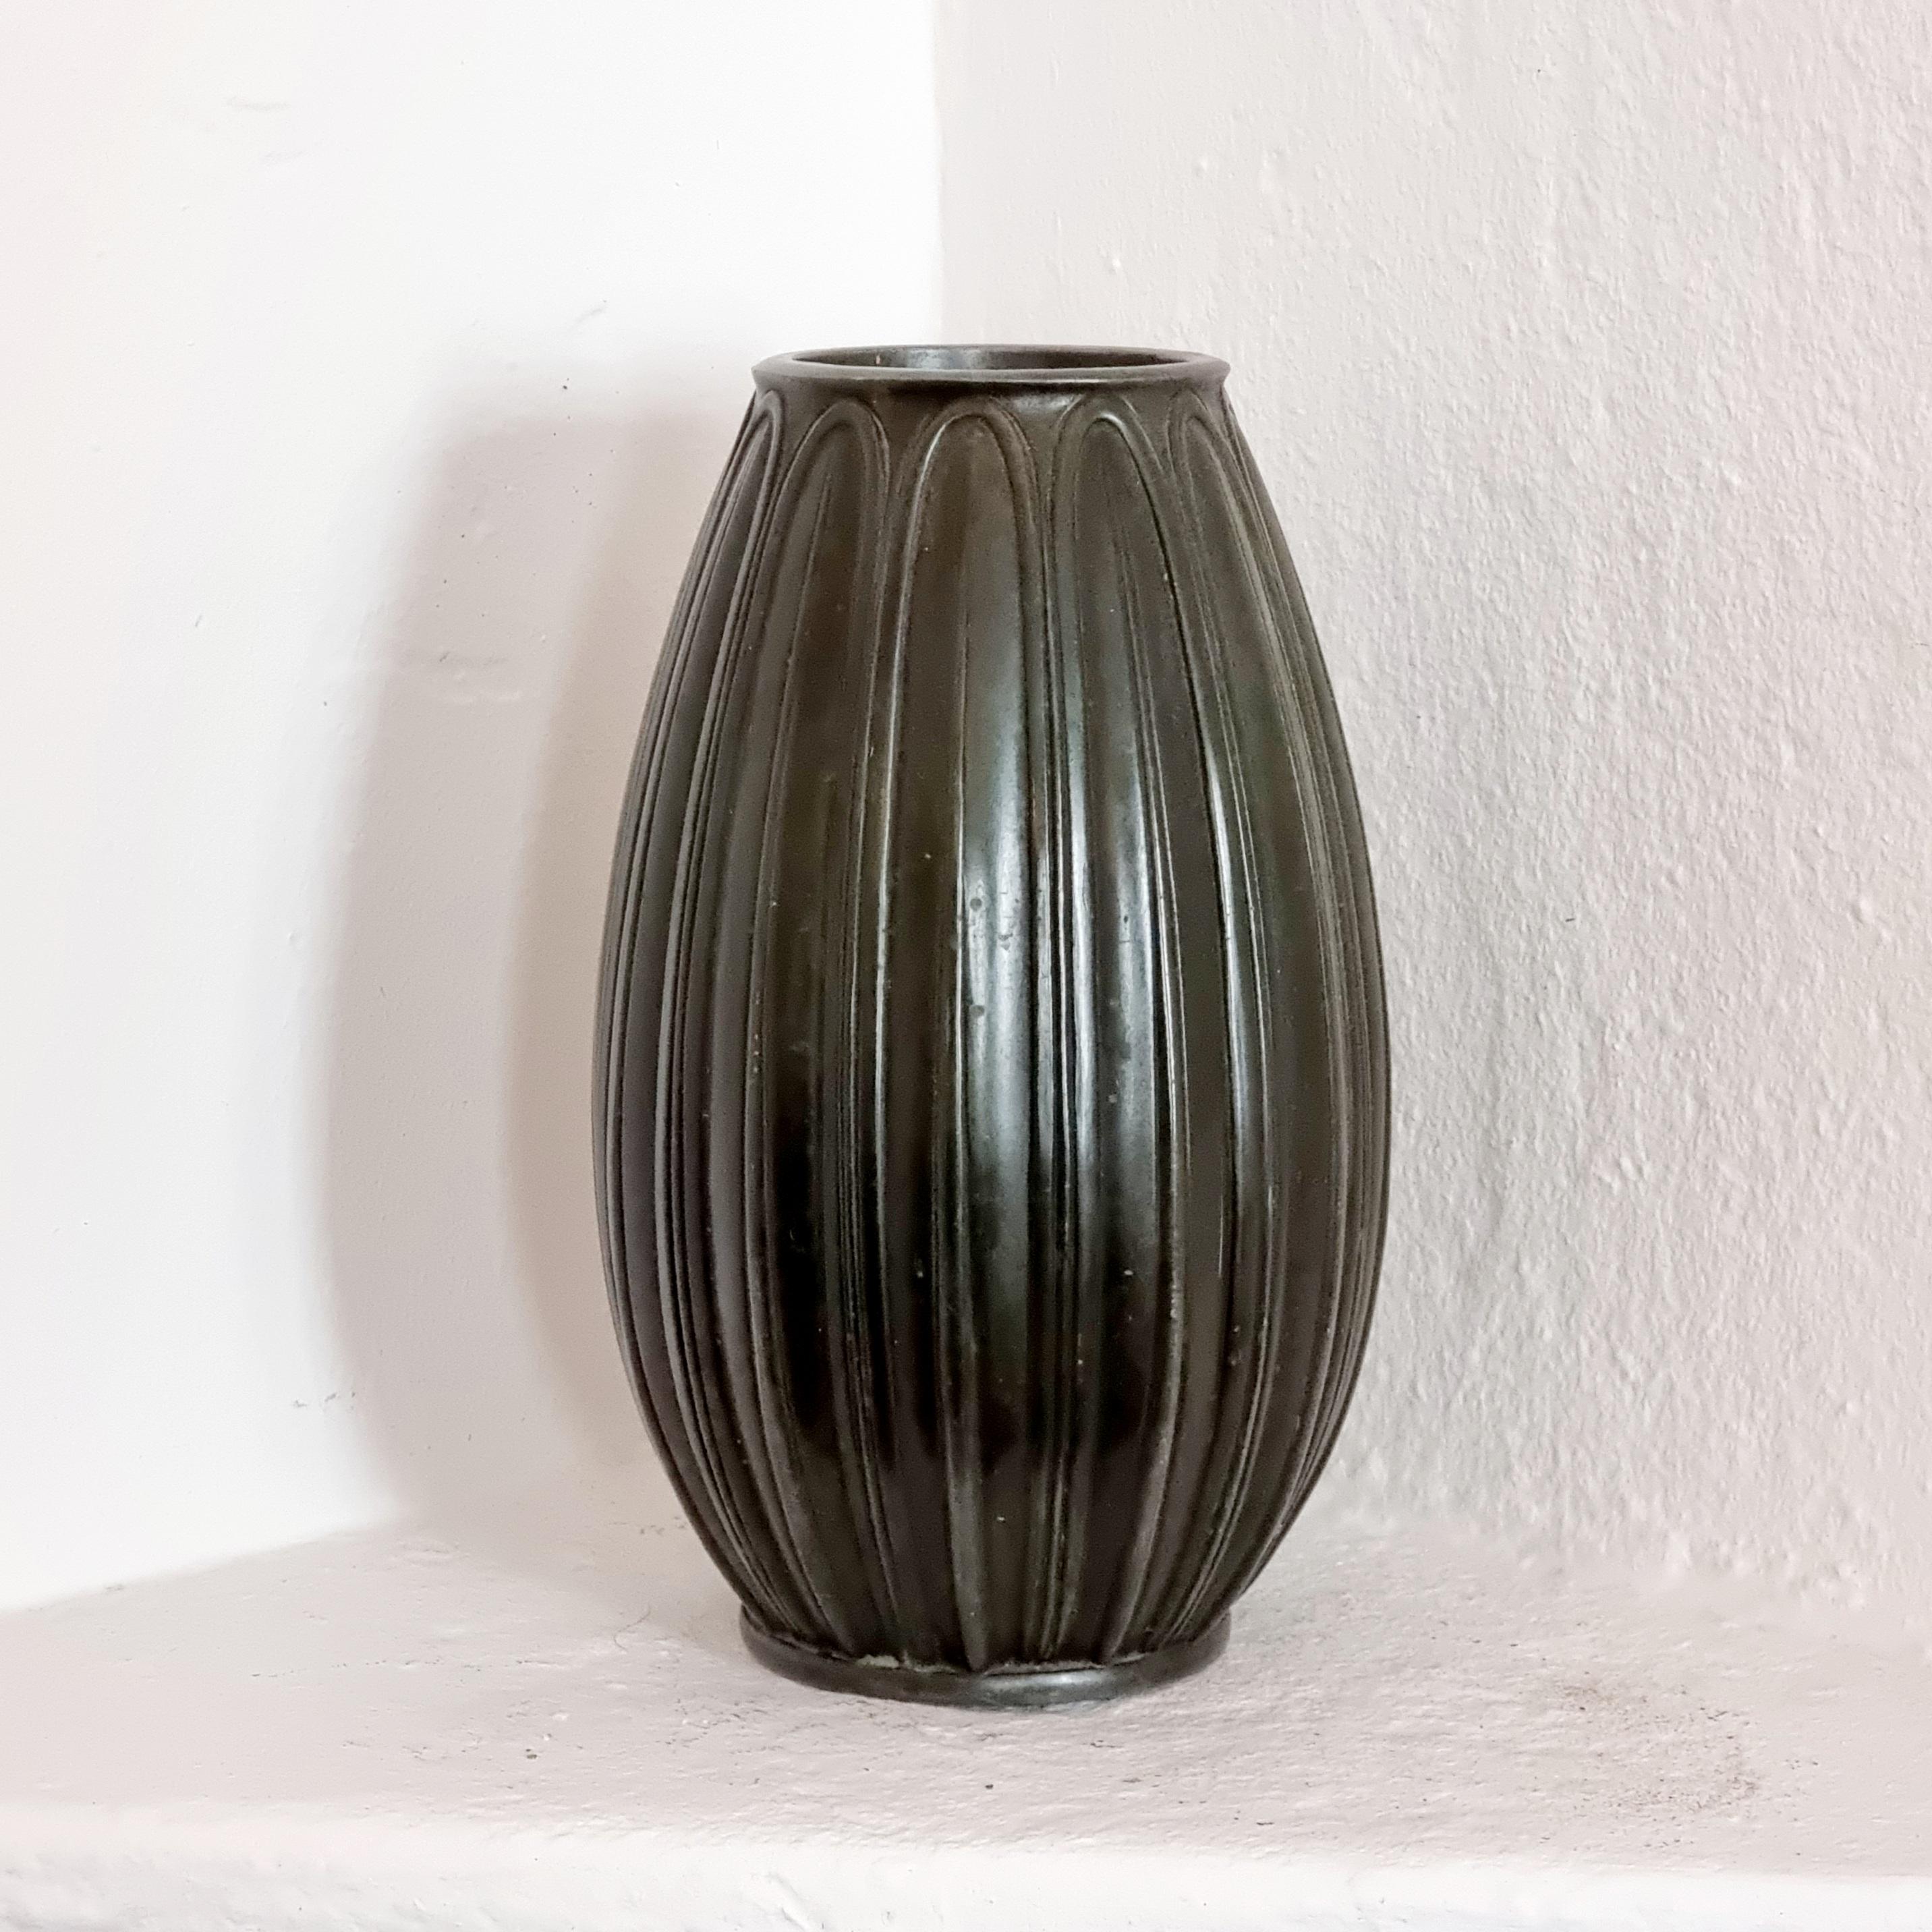 Magnifique vase décoratif Art Deci en zinc patiné bronze, fabriqué au Danemark par Just Andersen.

Motif stylisé et belle patine. Signes normaux d'âge et d'usure. Le fond porte le poinçon du fabricant.



